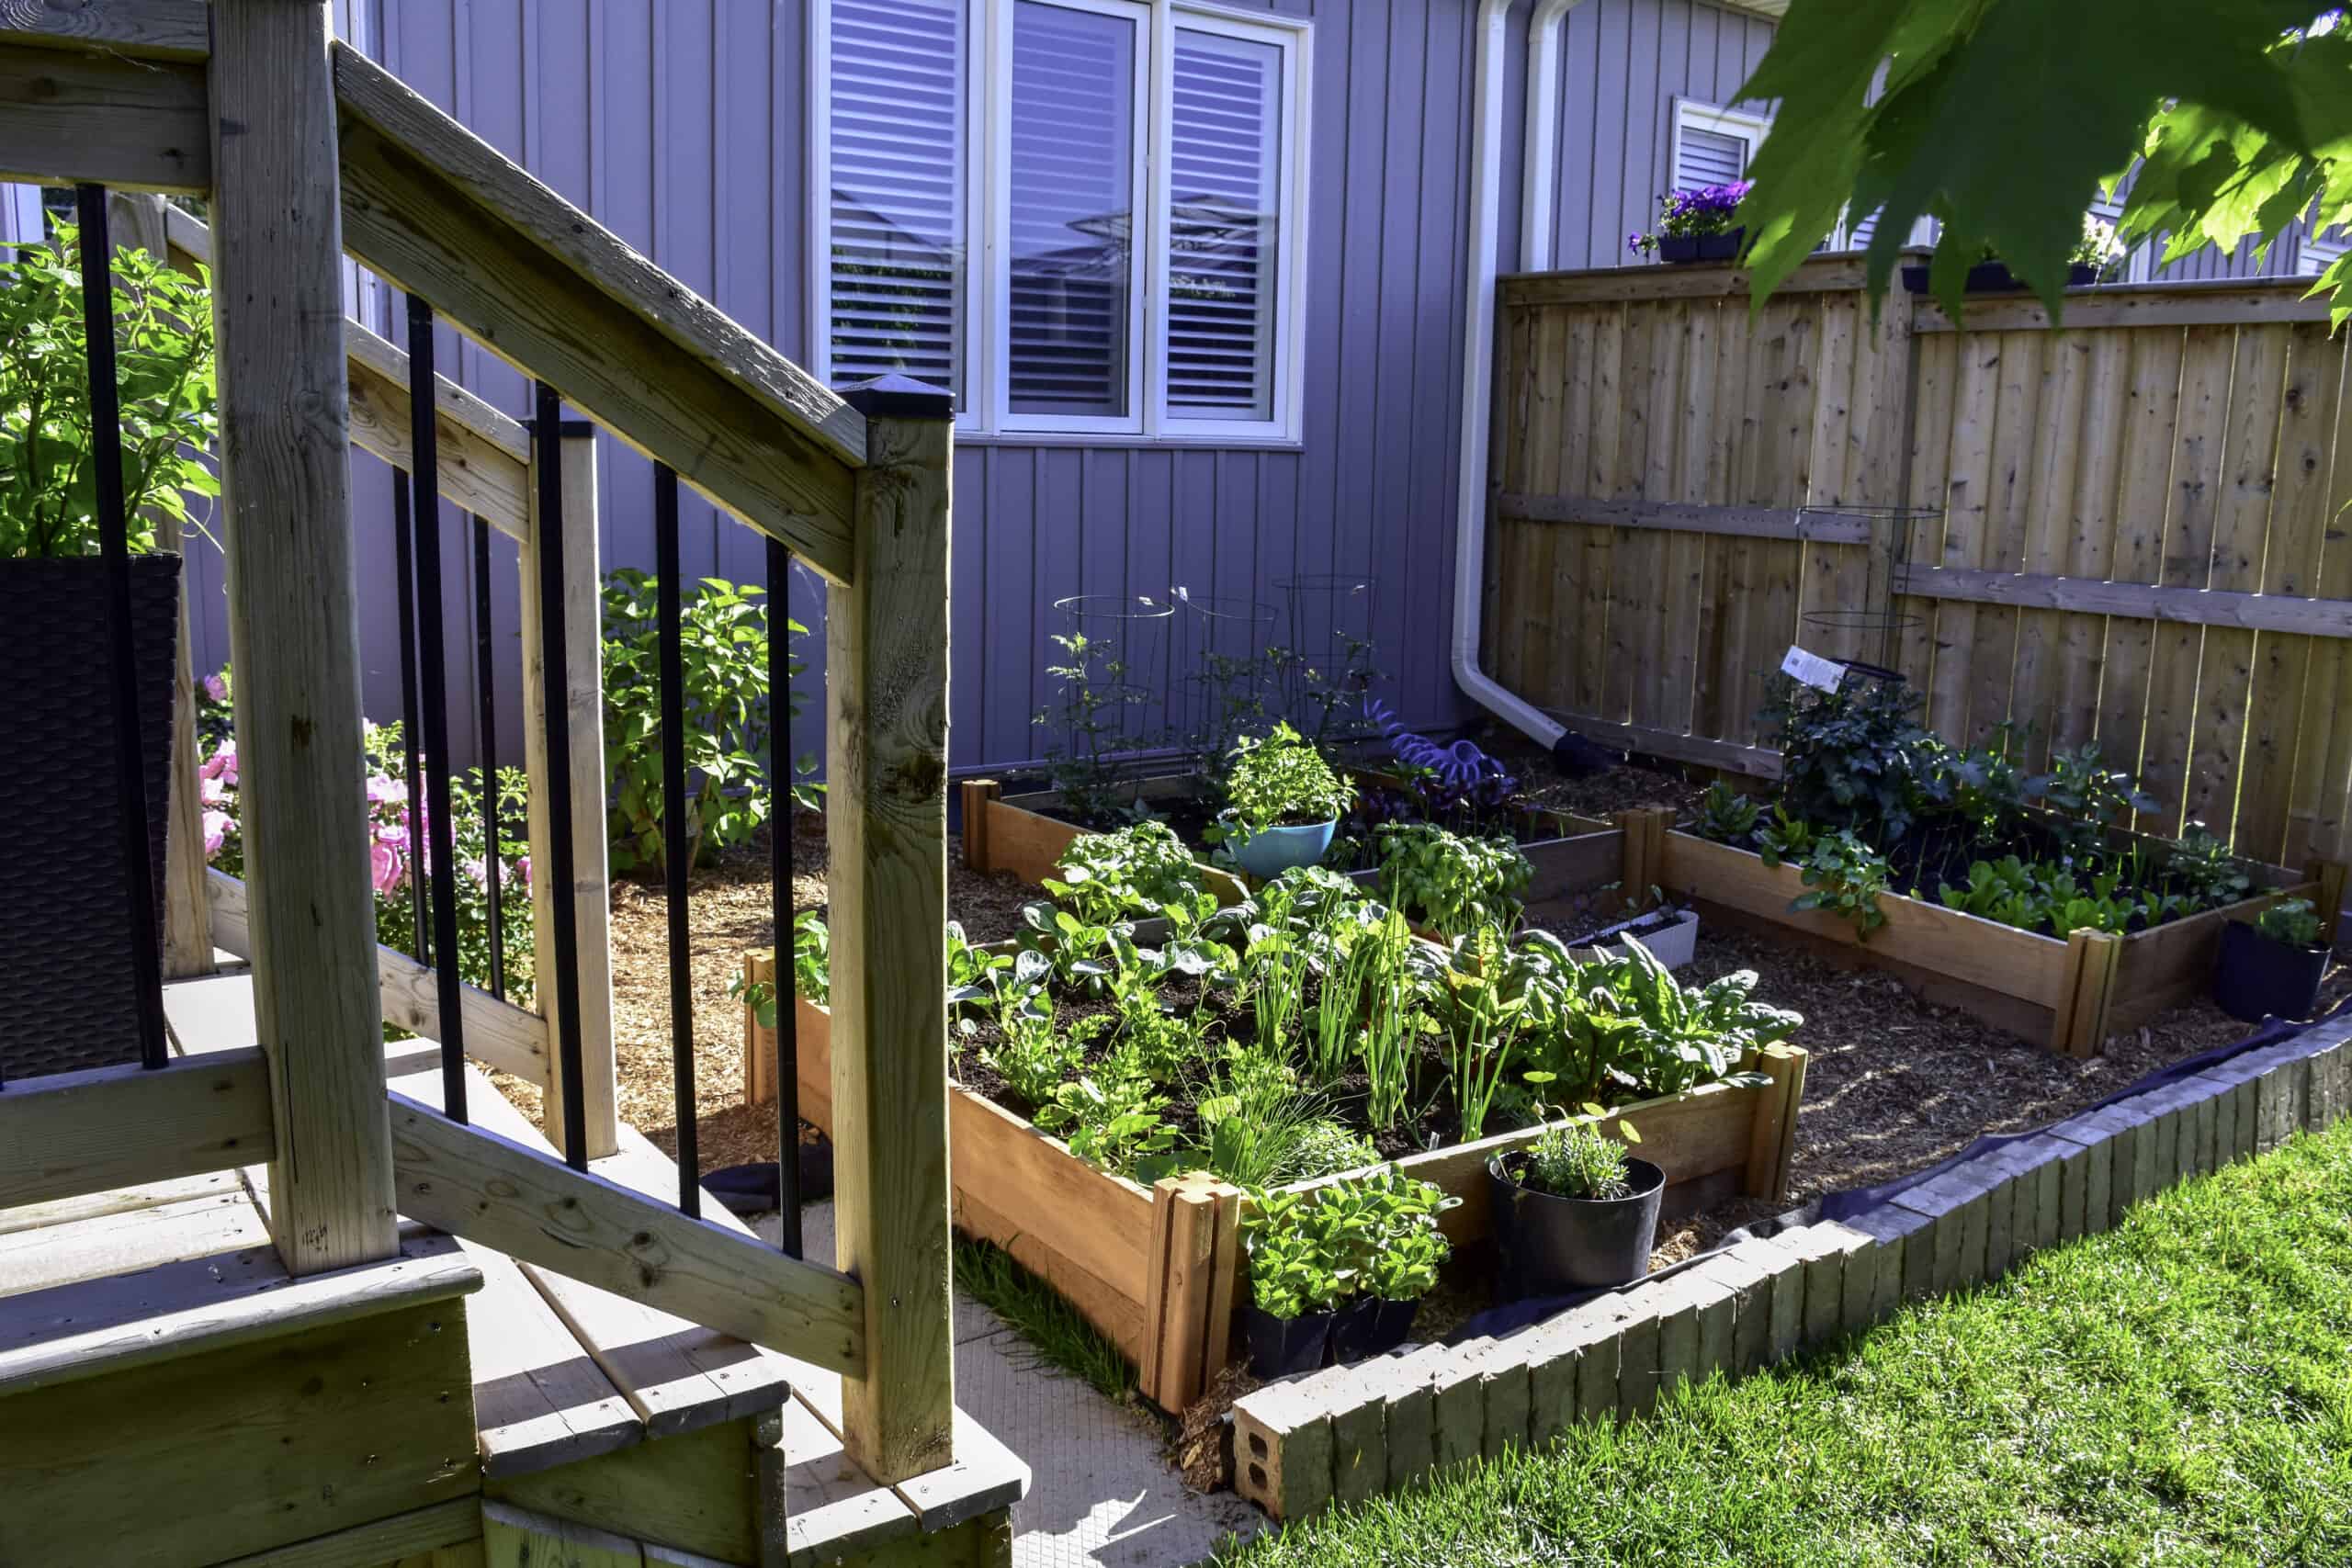 Suburban backyard vegetable garden